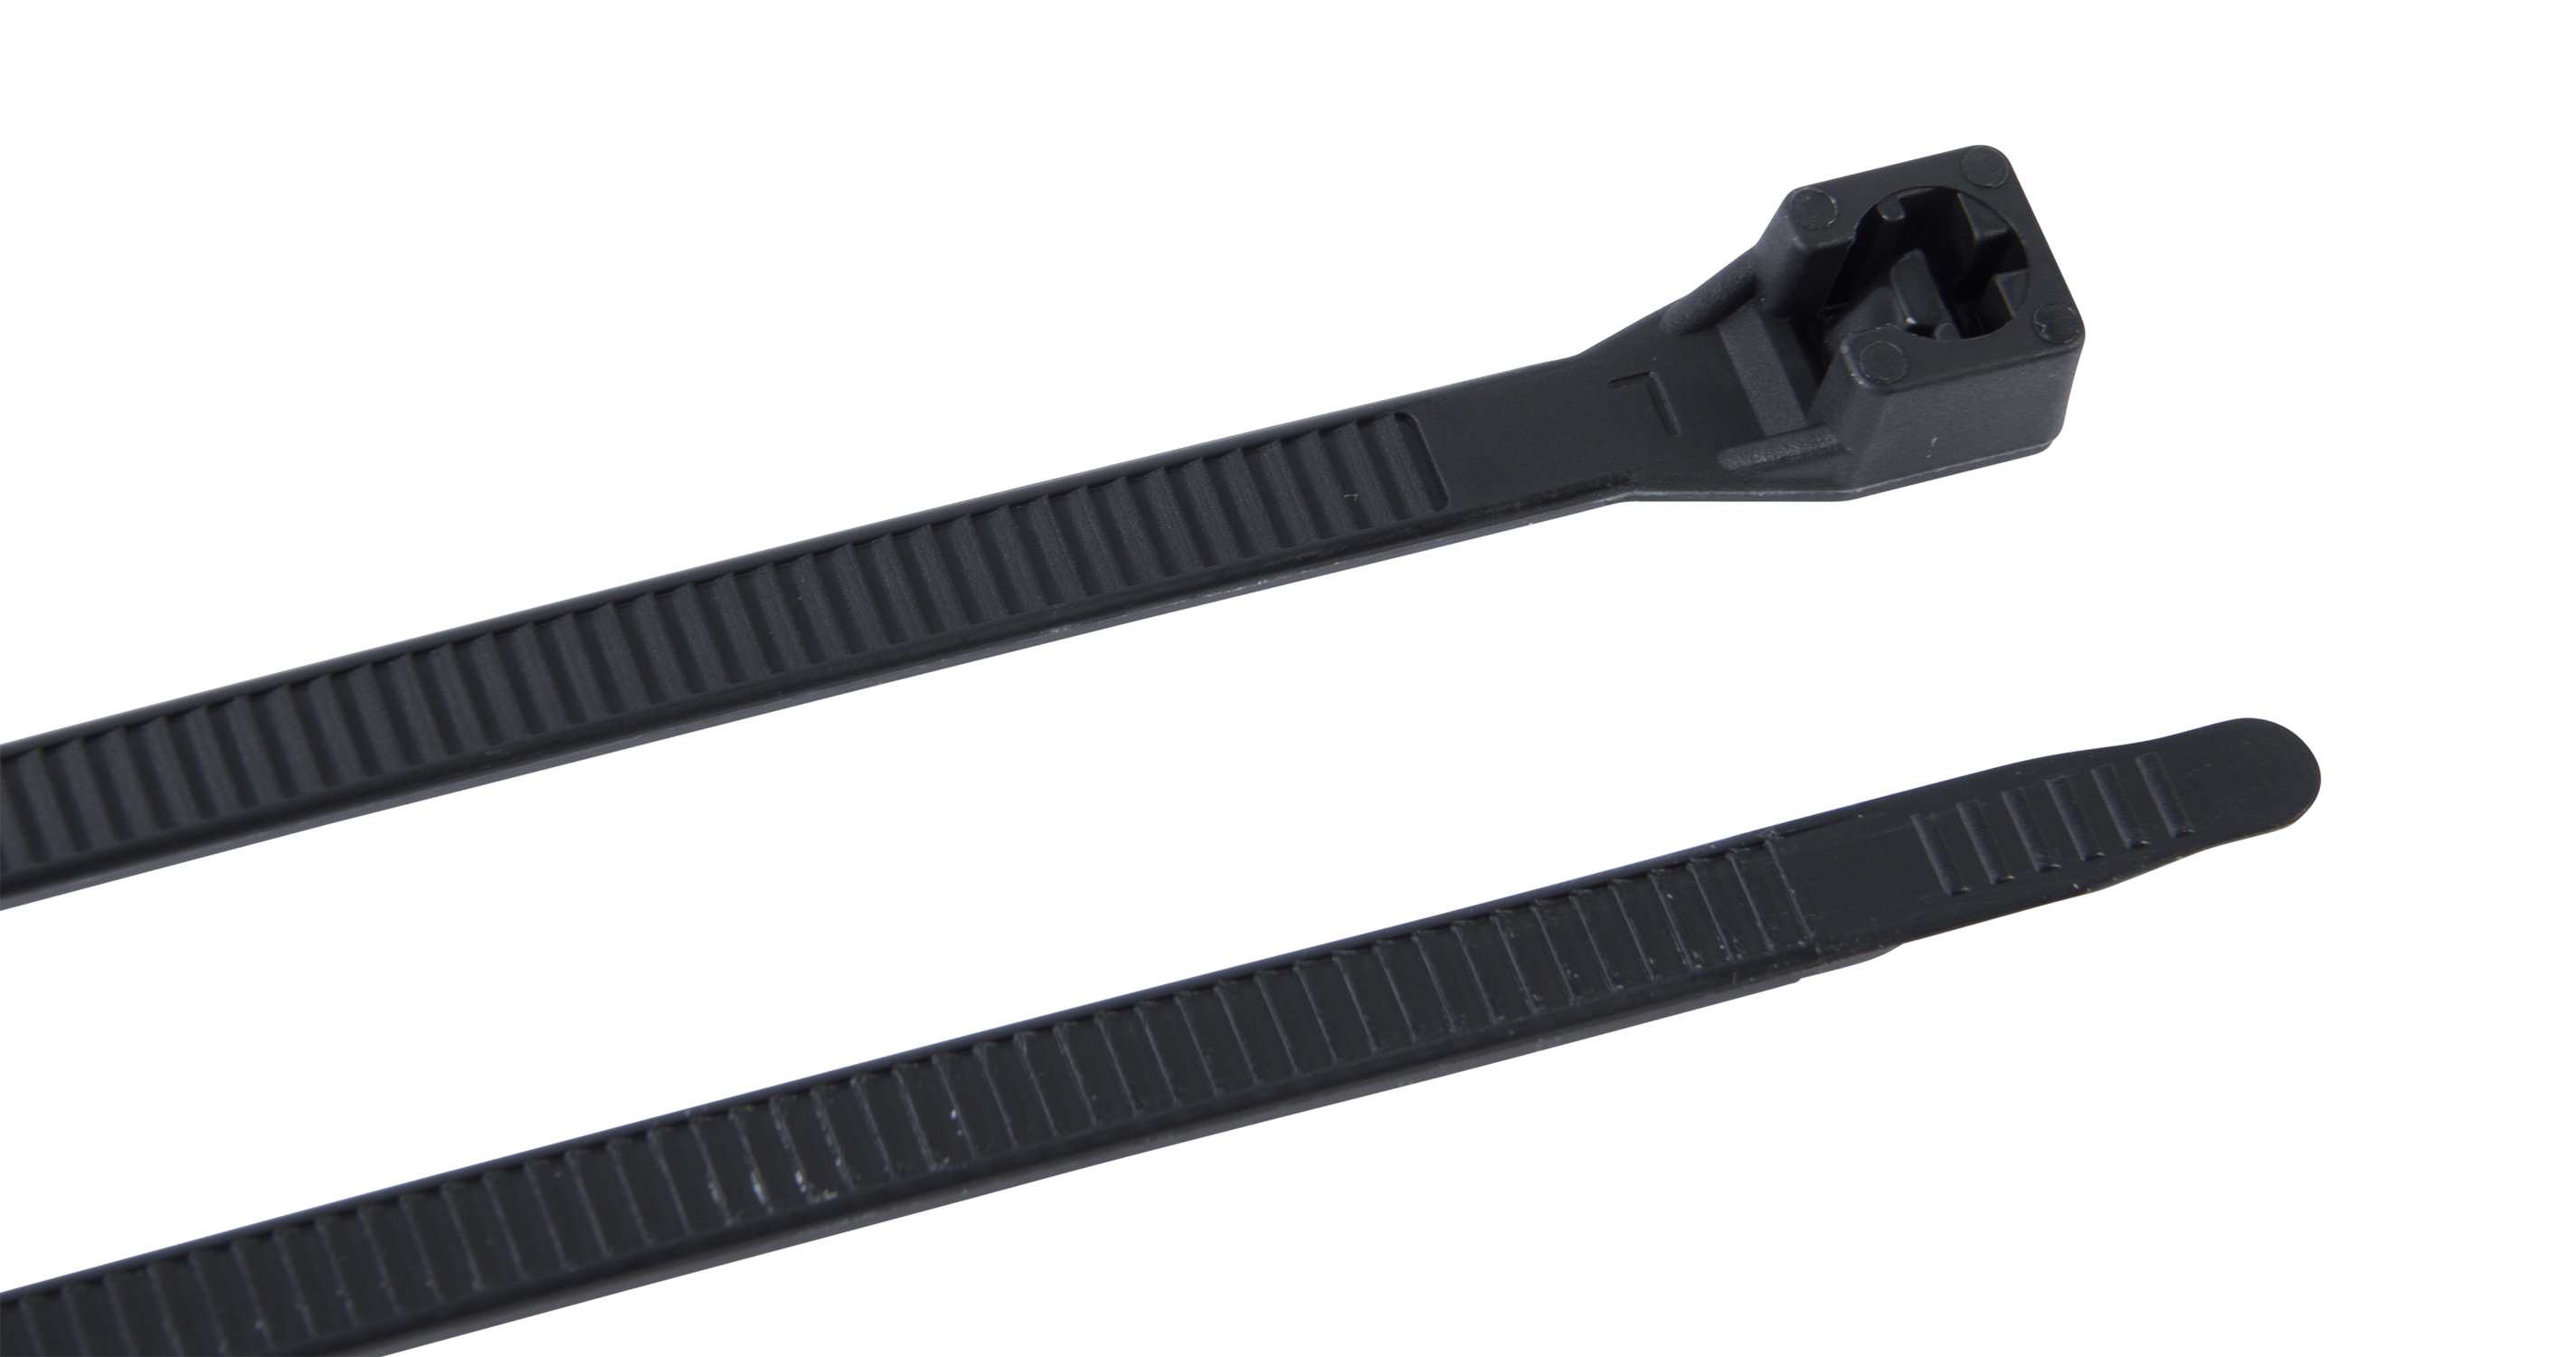 Cable Tie Heavy-duty 12 120lb Black